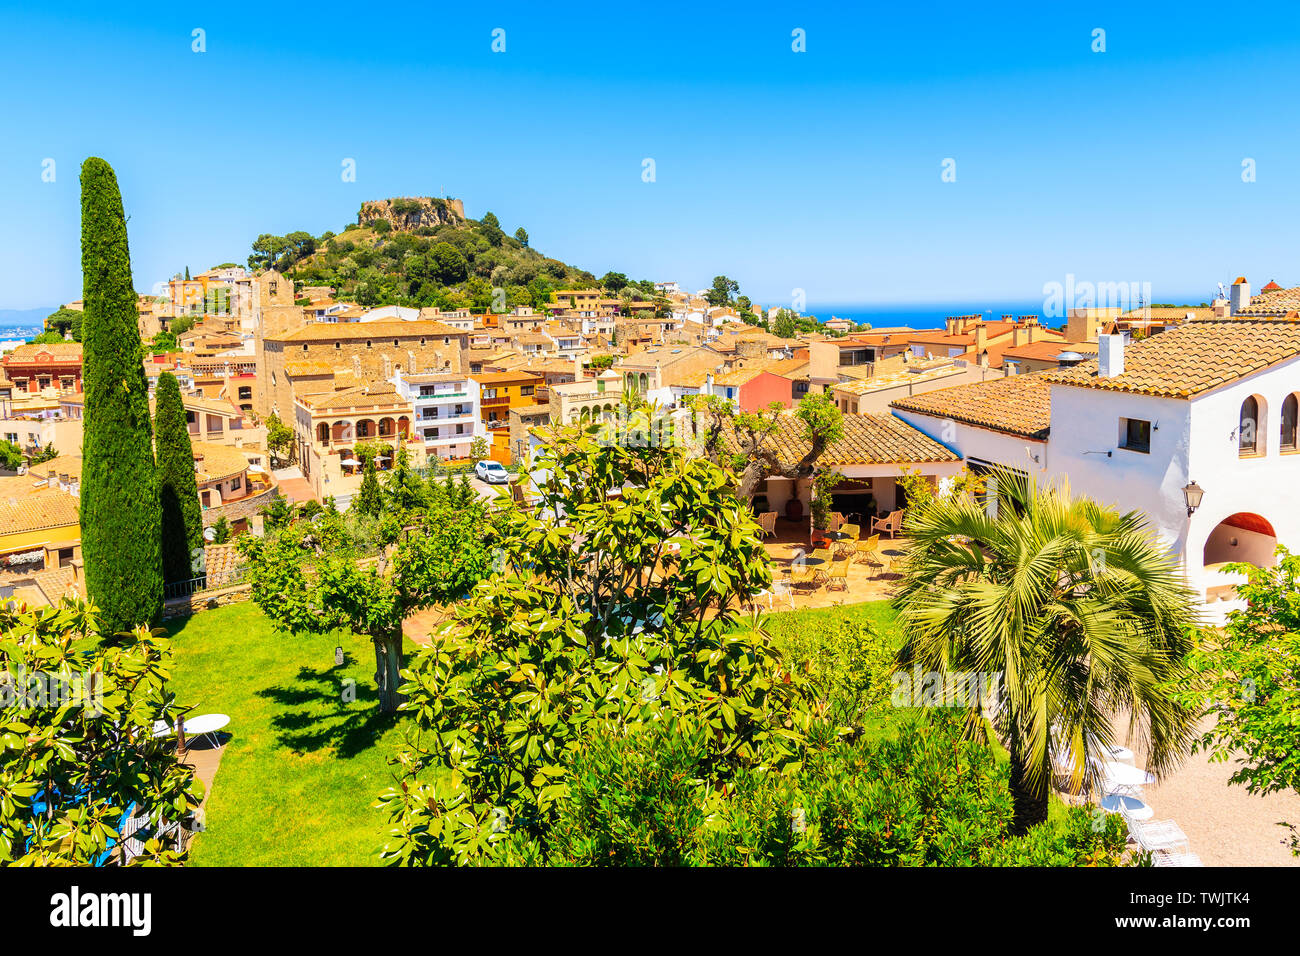 Tradizionali case di pietra nella città di Begur, vista dalla terrazza nei giardini della città, Costa Brava, Spagna Foto Stock